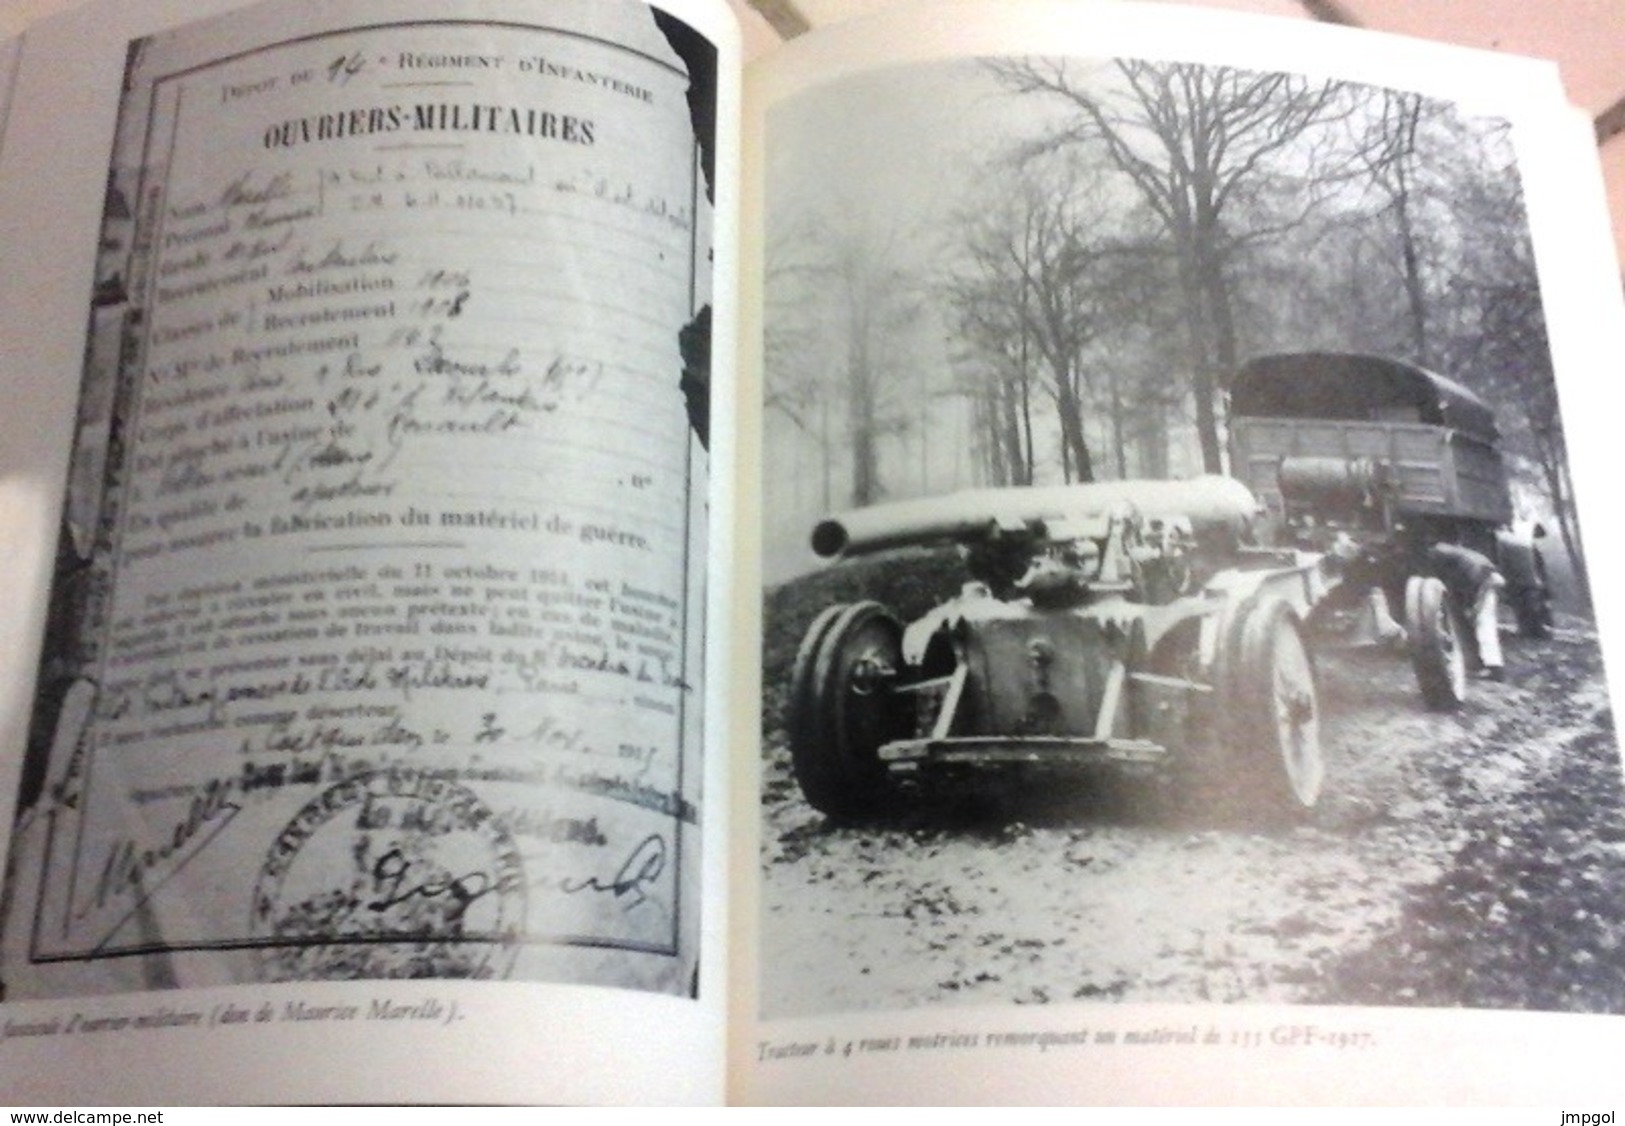 Renault Usines de Guerre 1914-1918 Chars d'Assaut Véhicules Blindés Moteurs Tracteurs Gilbert Hatry 1978